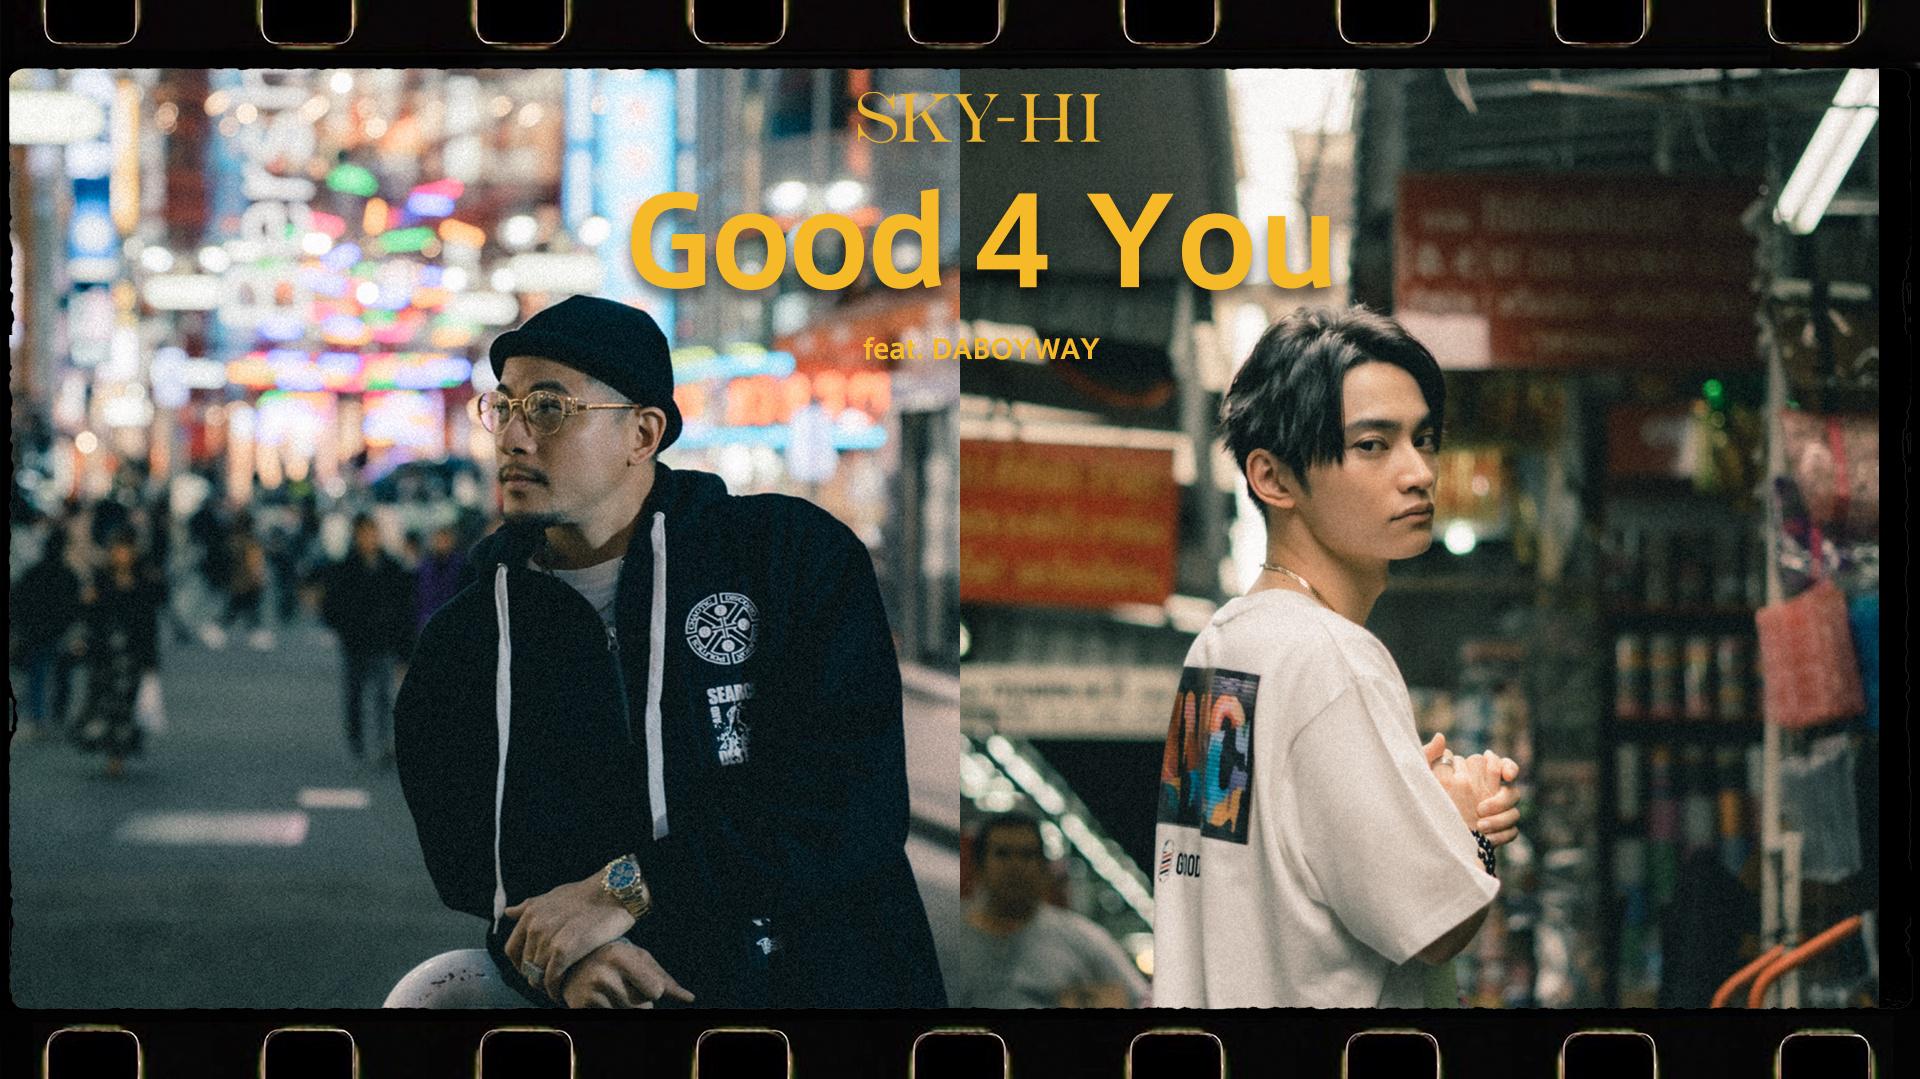 SKY-HI - Good 4 You feat. DABOYWAY